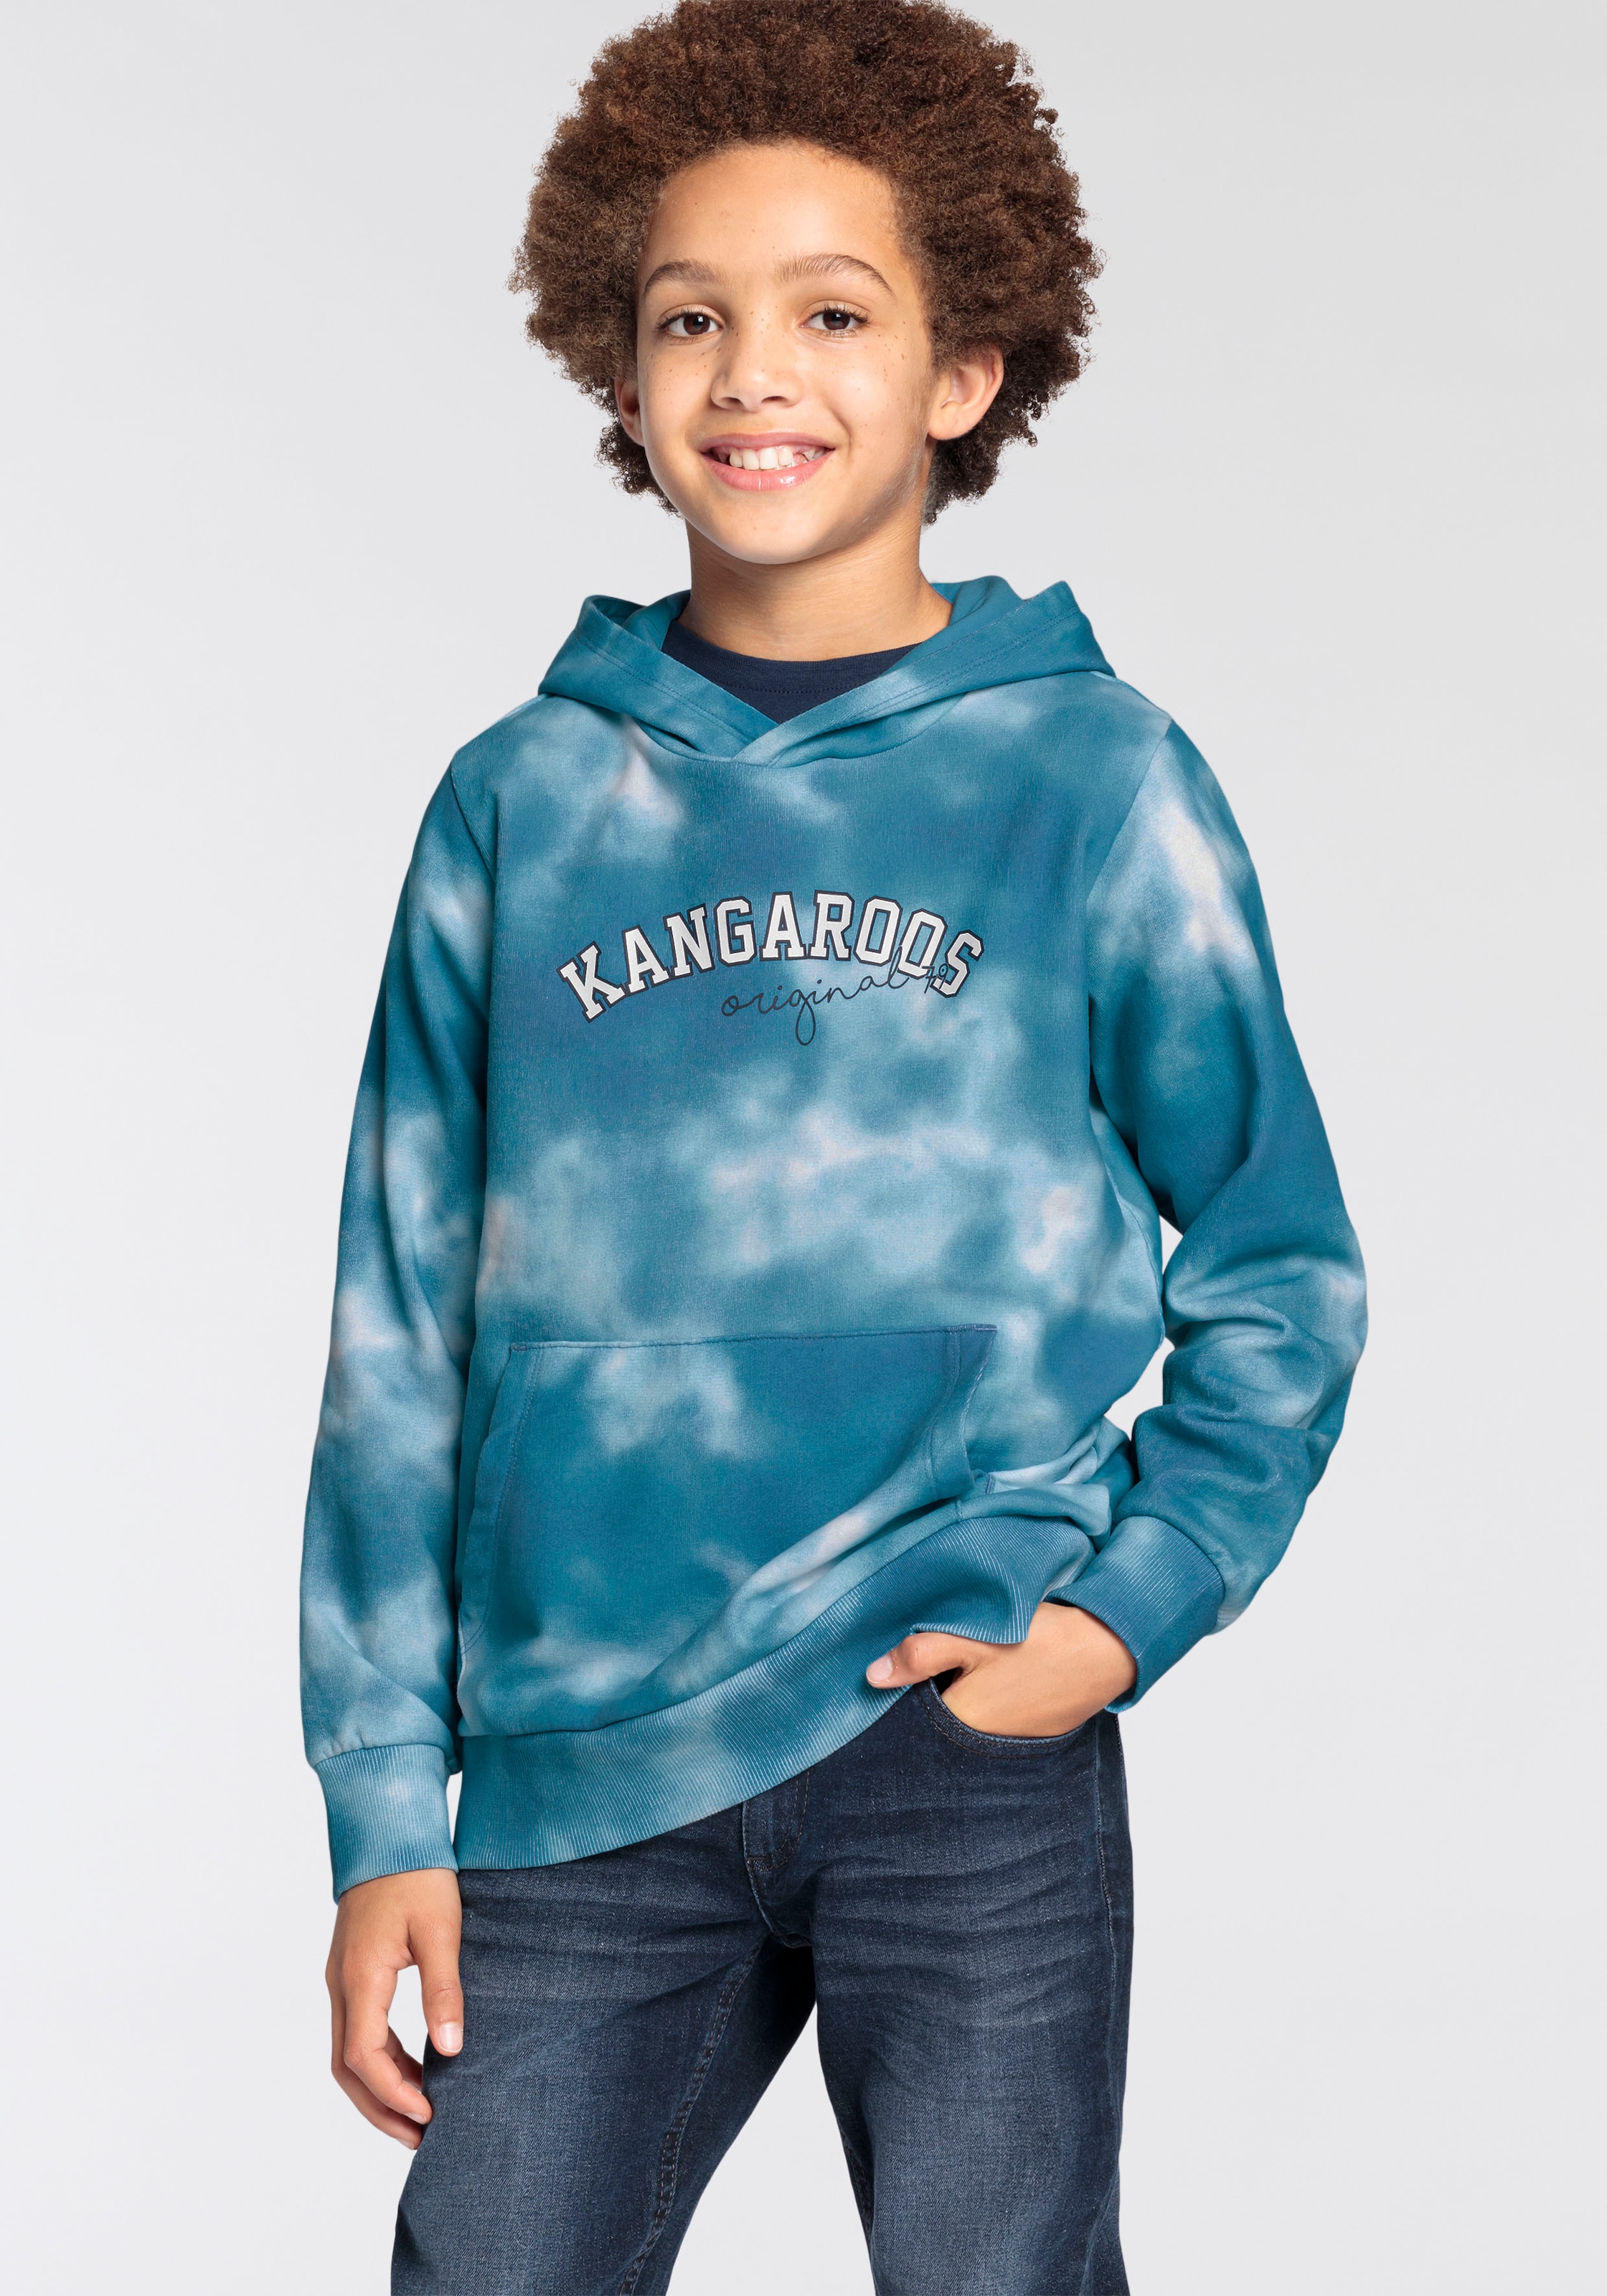 KangaROOS Mindestbestellwert ohne Batik-Print »Kangaroos mit Trendige shoppen Jungen«, Kapuzensweatshirt allover